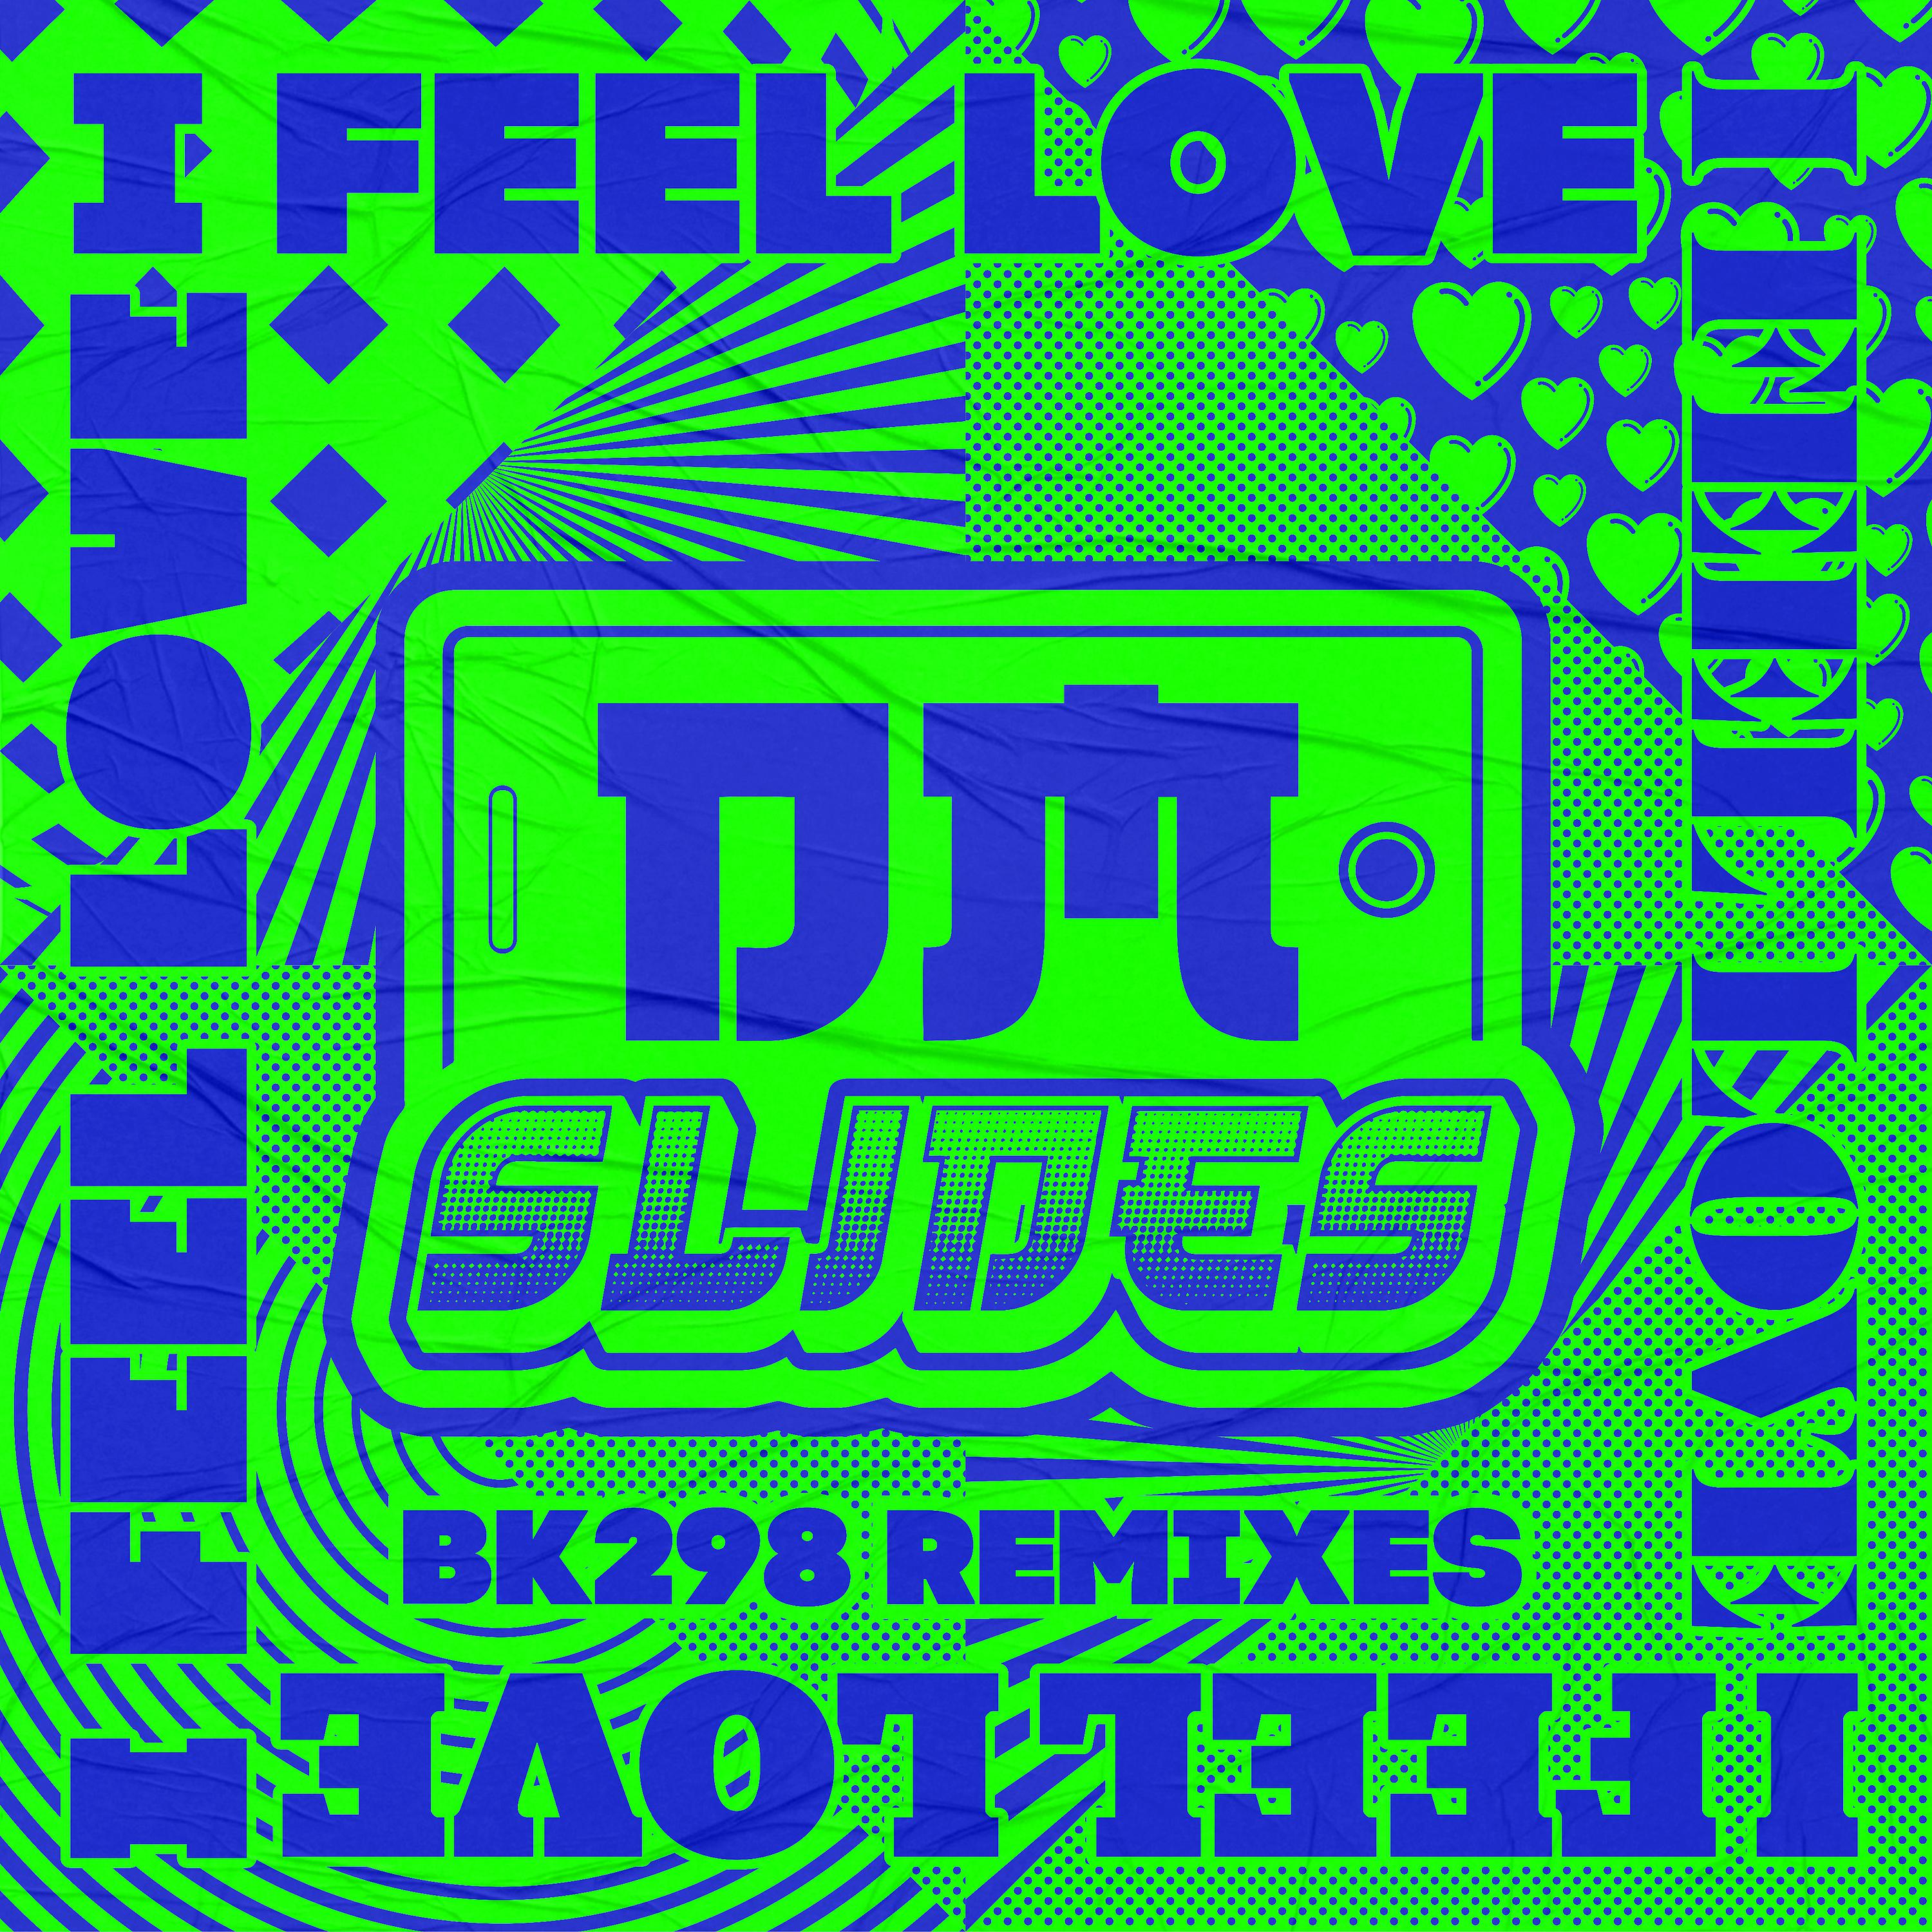 Постер альбома I Feel Love (BK298 Remixes)